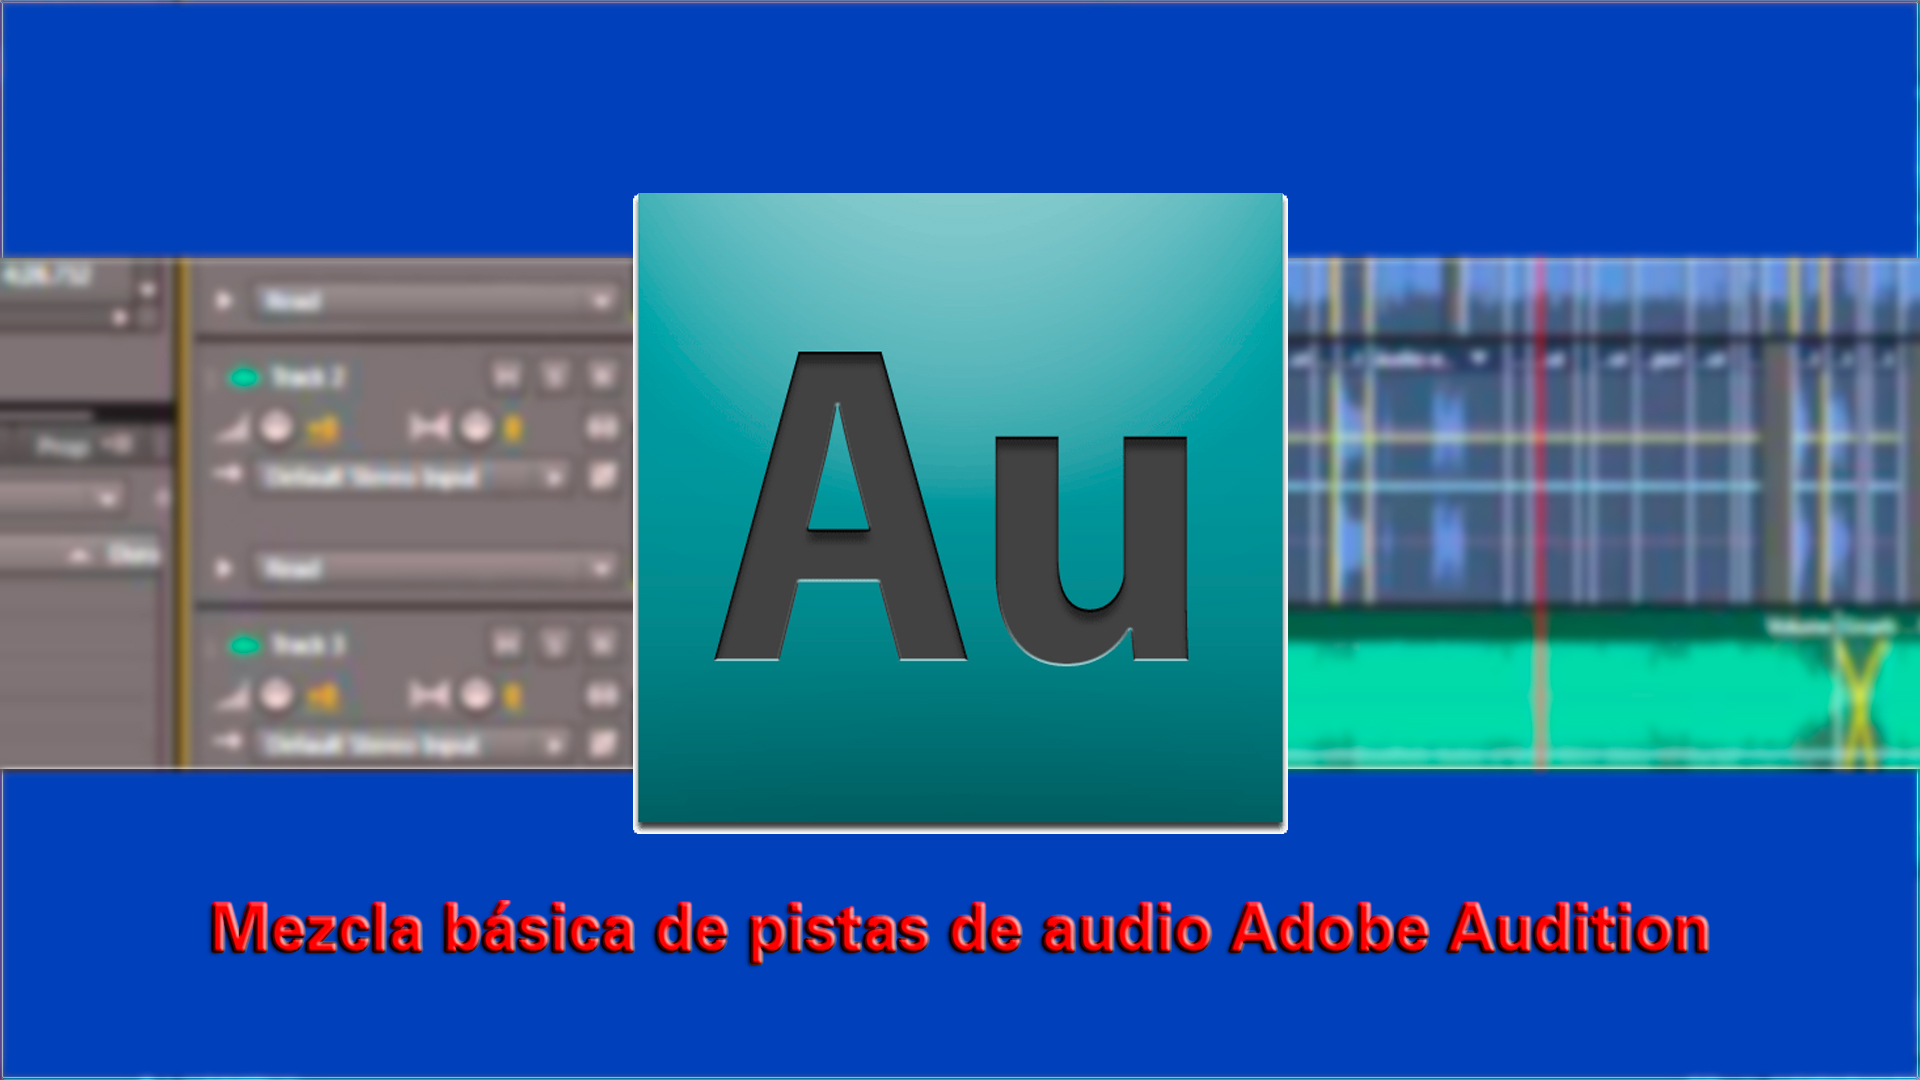 Tutorial Adobe Audition: Mezcla básica de pistas de audio con Adobe Audition